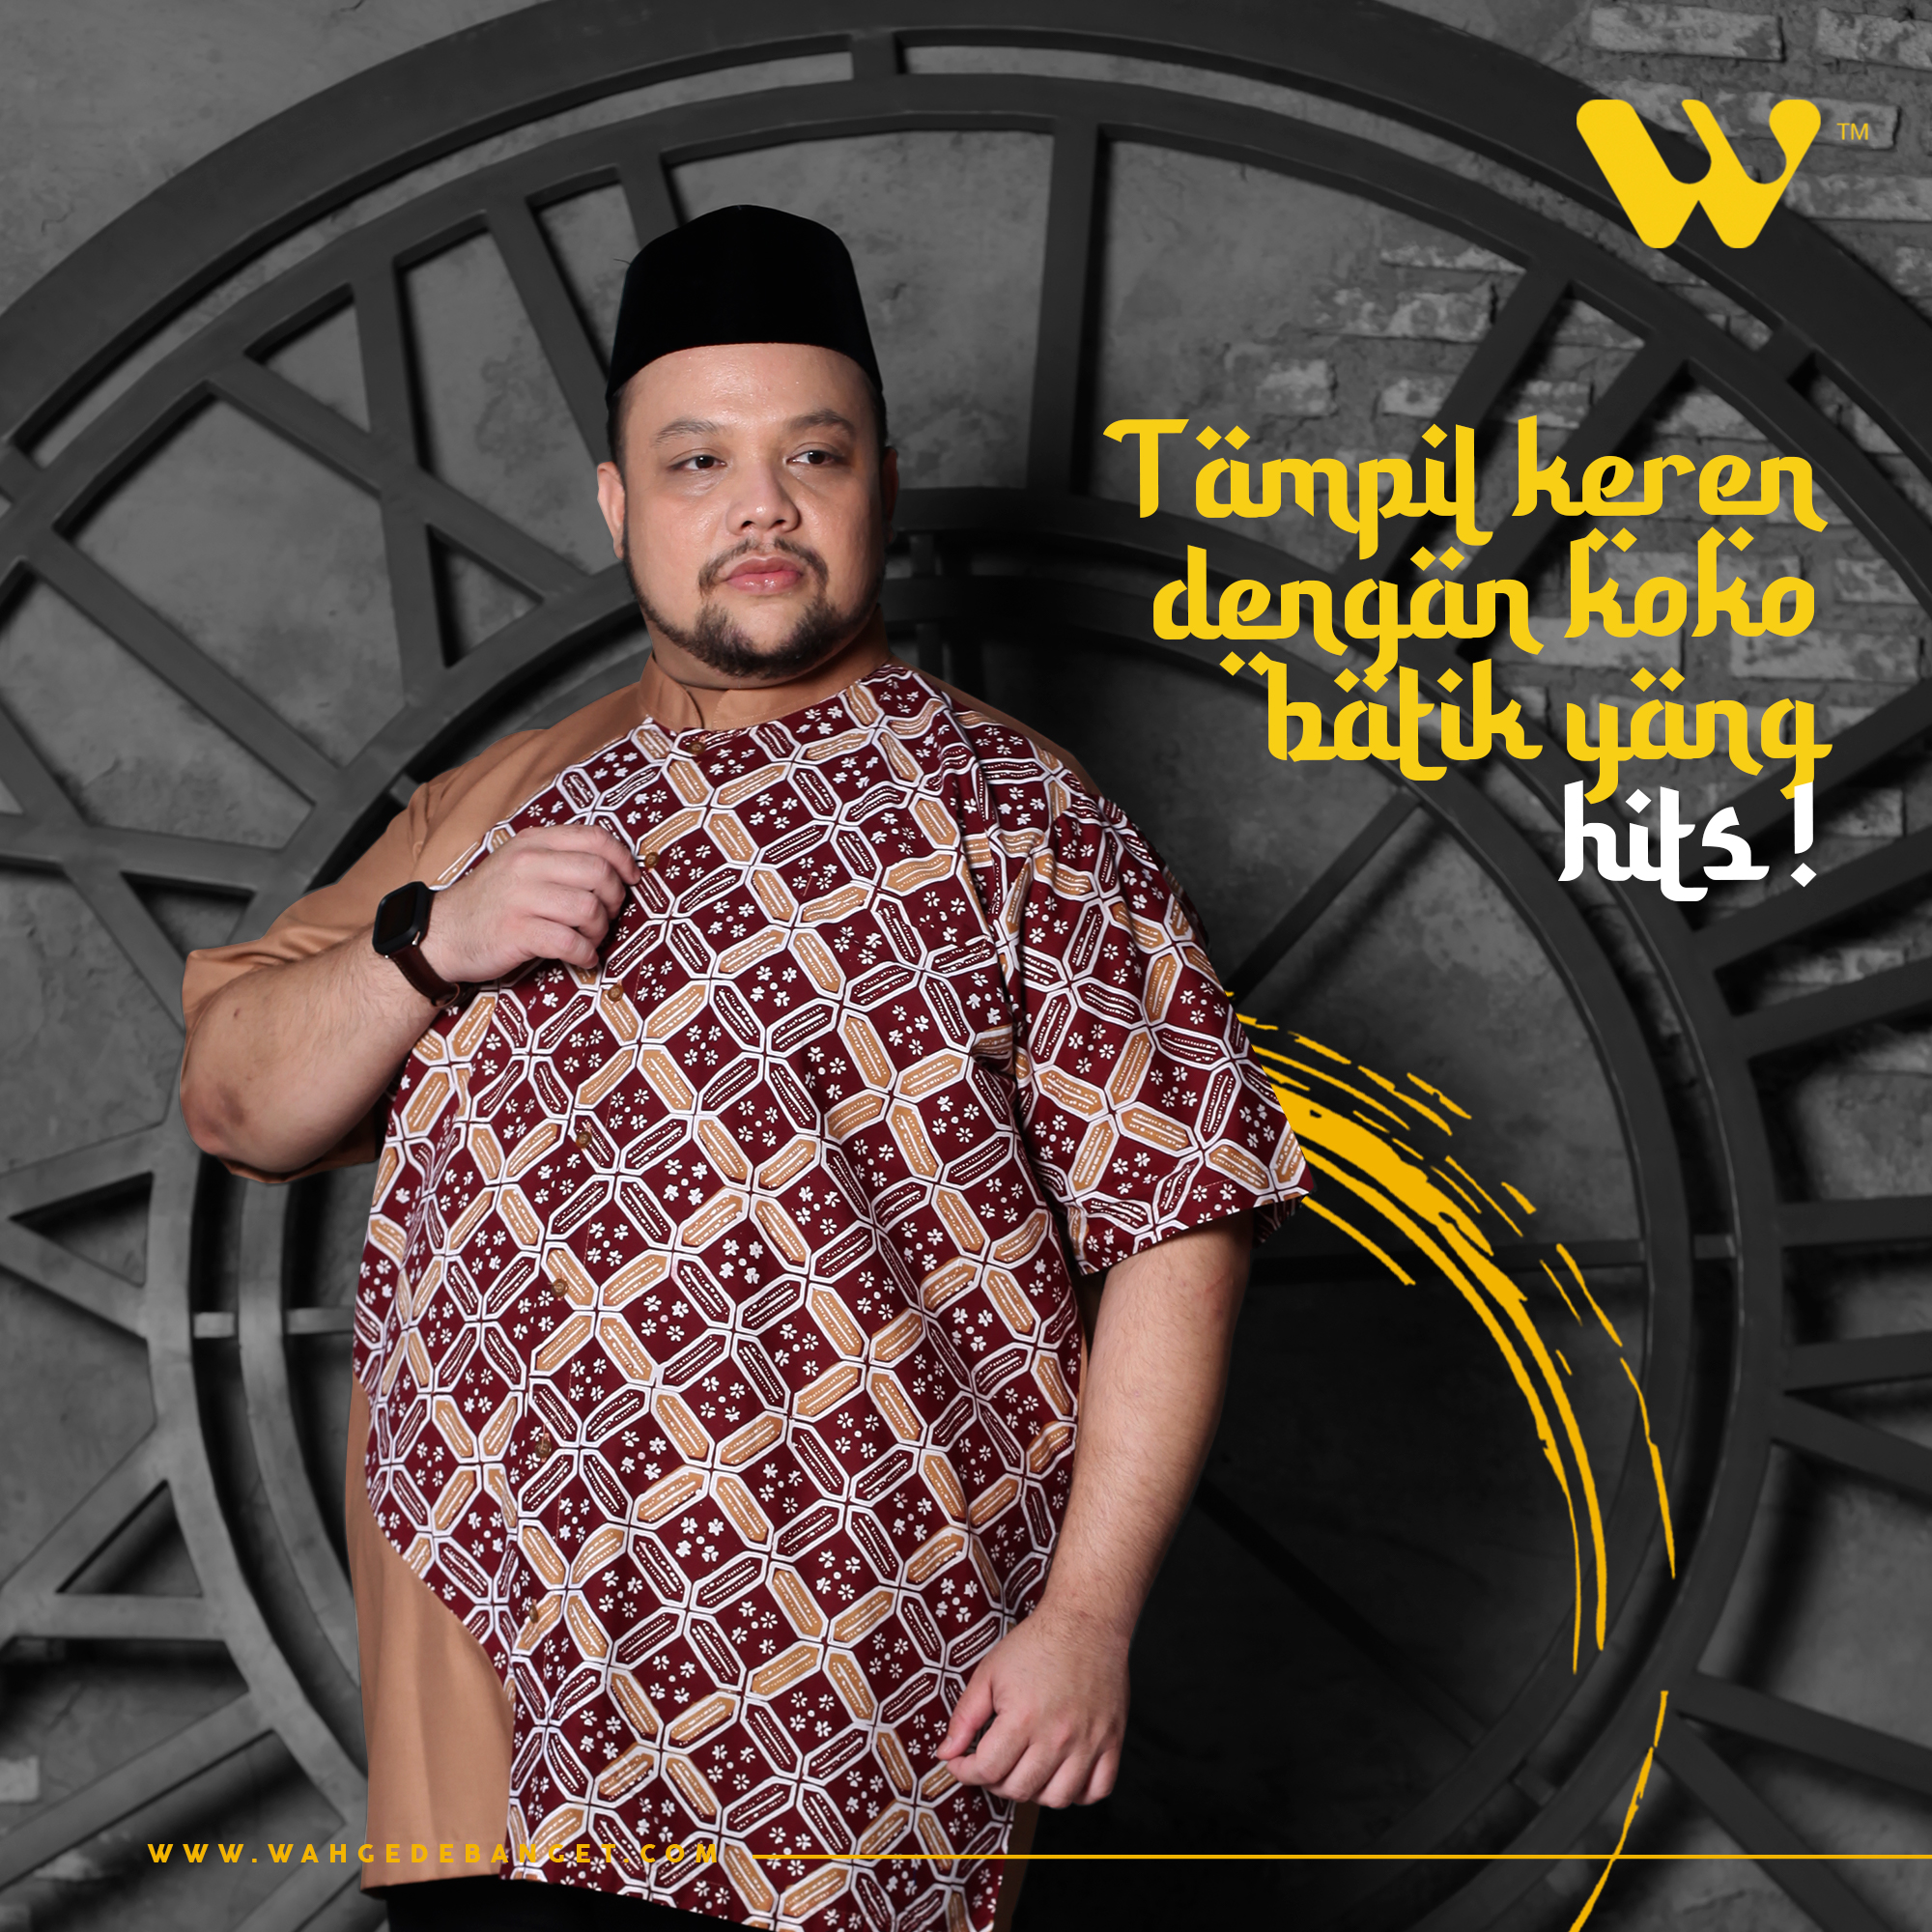 Tampil Keren Dengan Koko Batik Yang Hits ! image